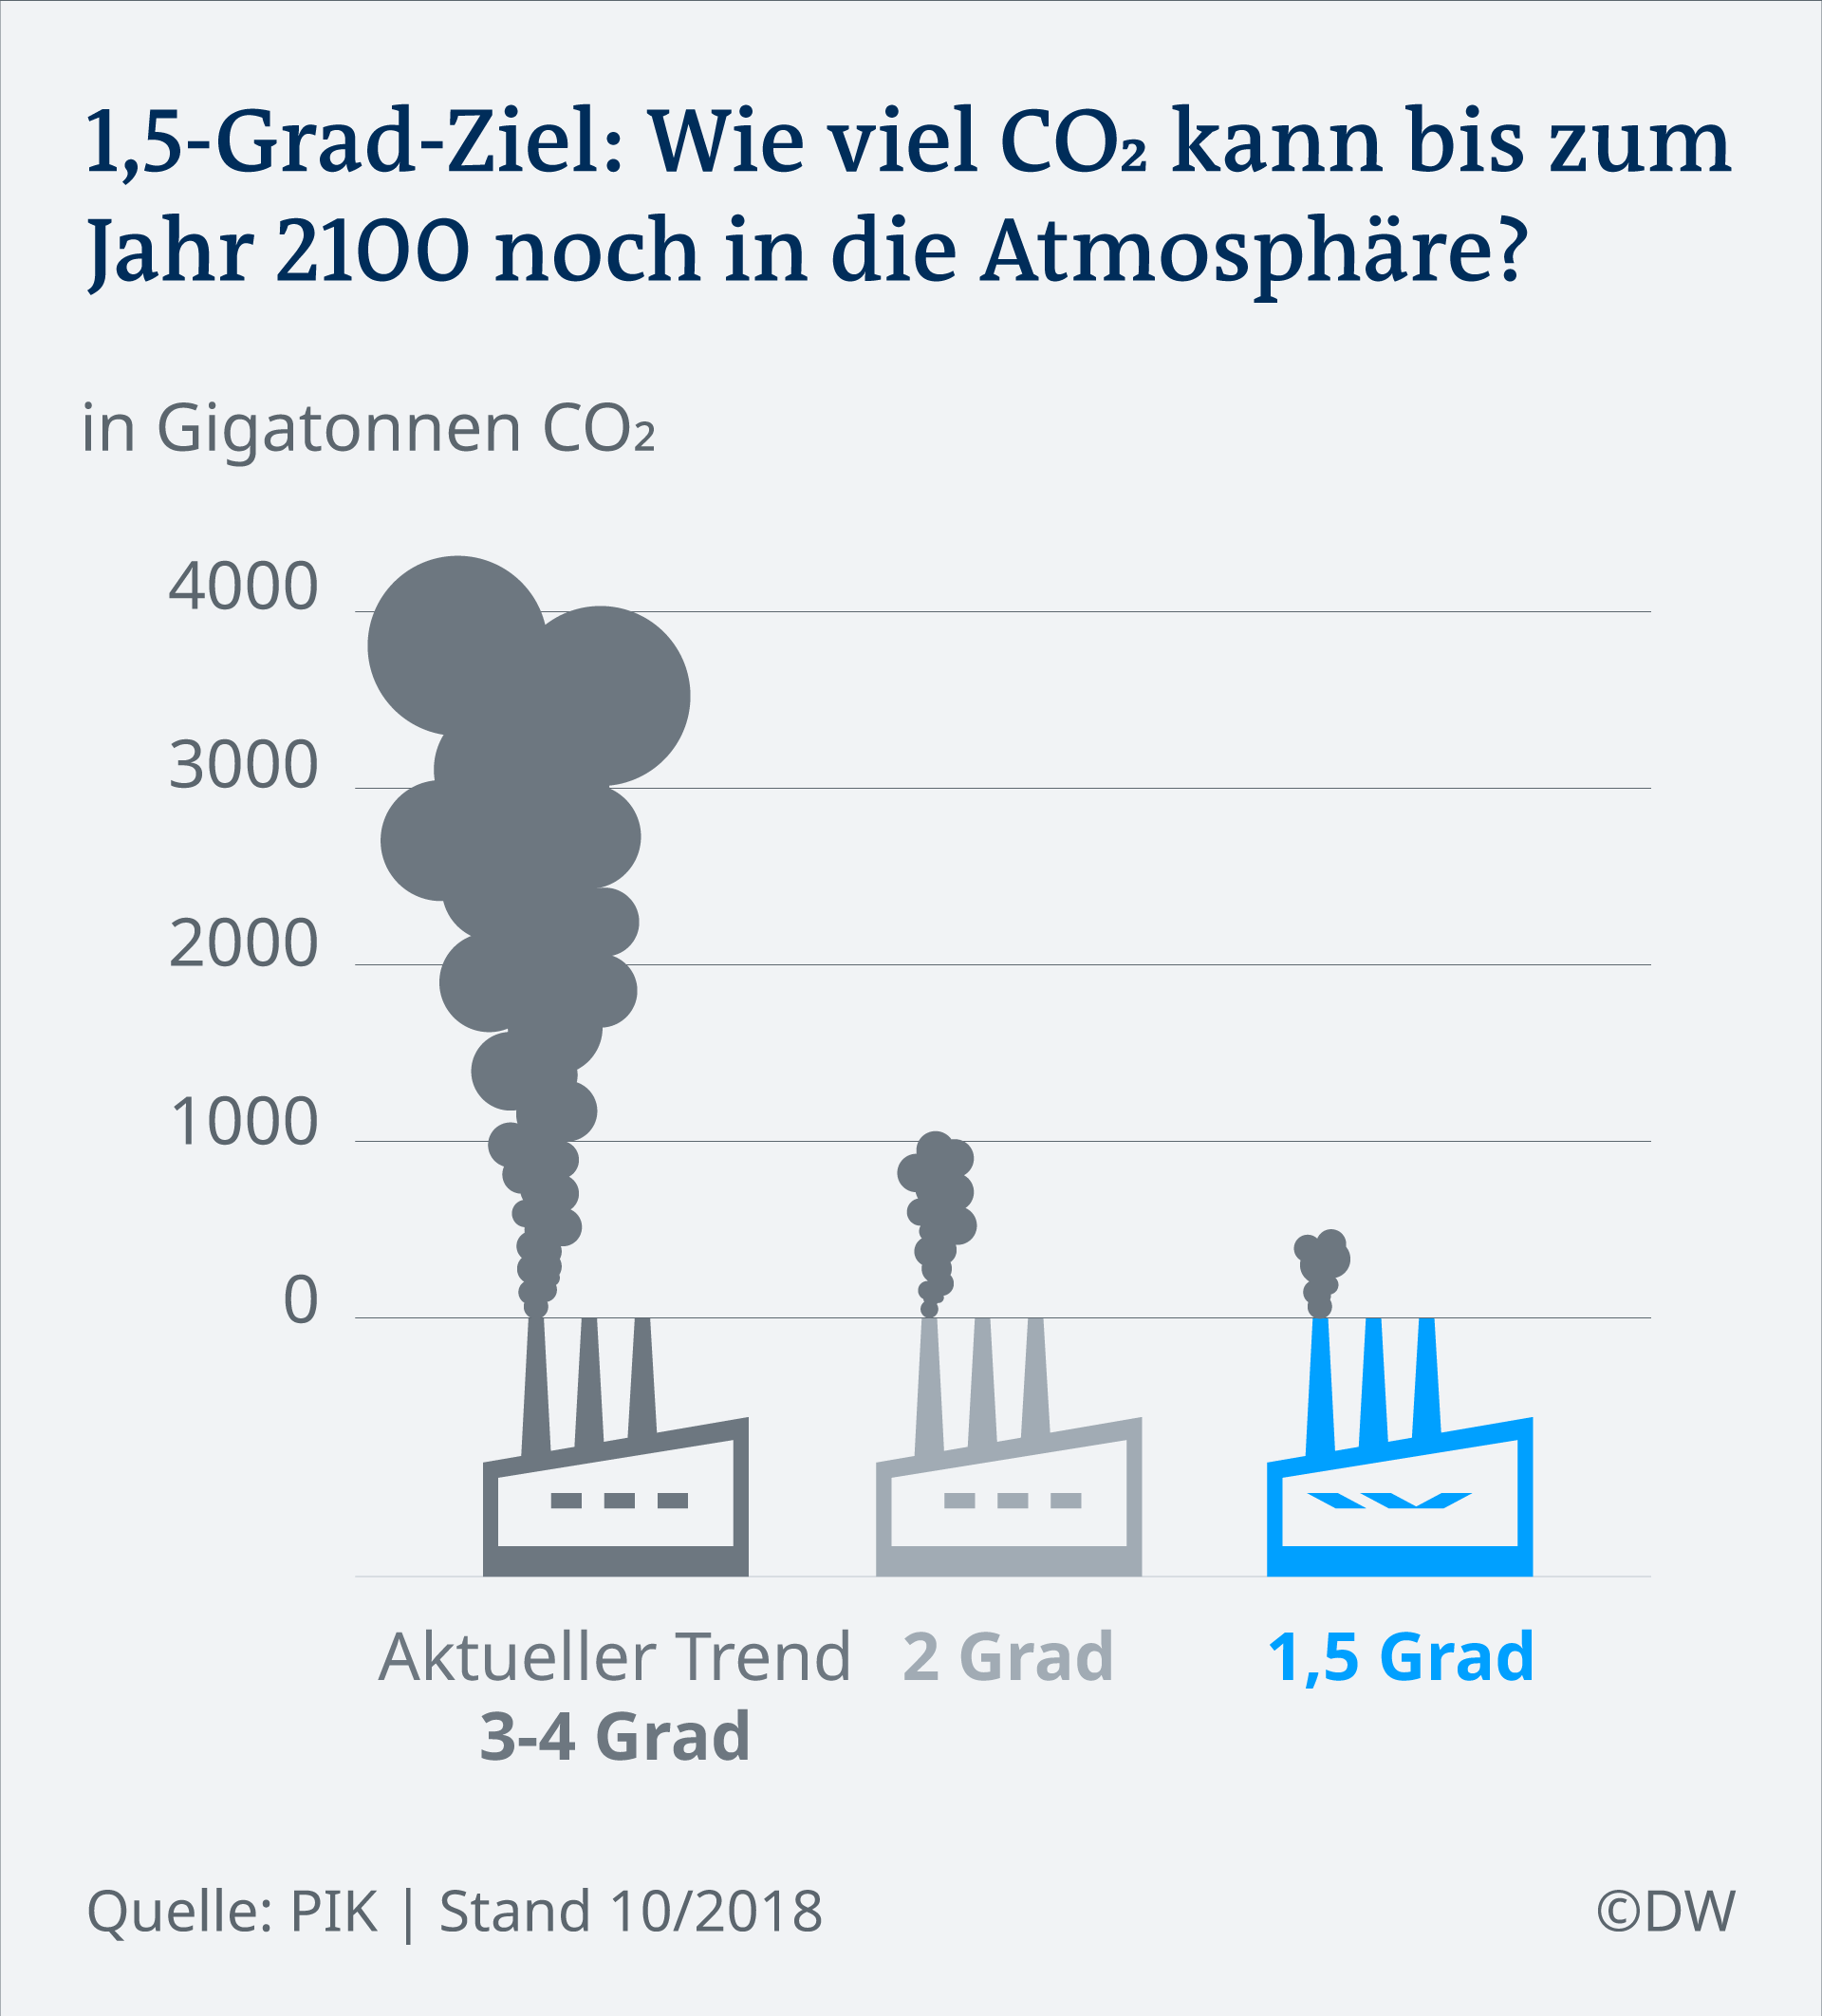 Infografik: Wie viel CO2 darf bis zum Jahr 2100 noch in die Atmosphäre gelangen, um das 1,5-Grad-Ziel zu erreichen?